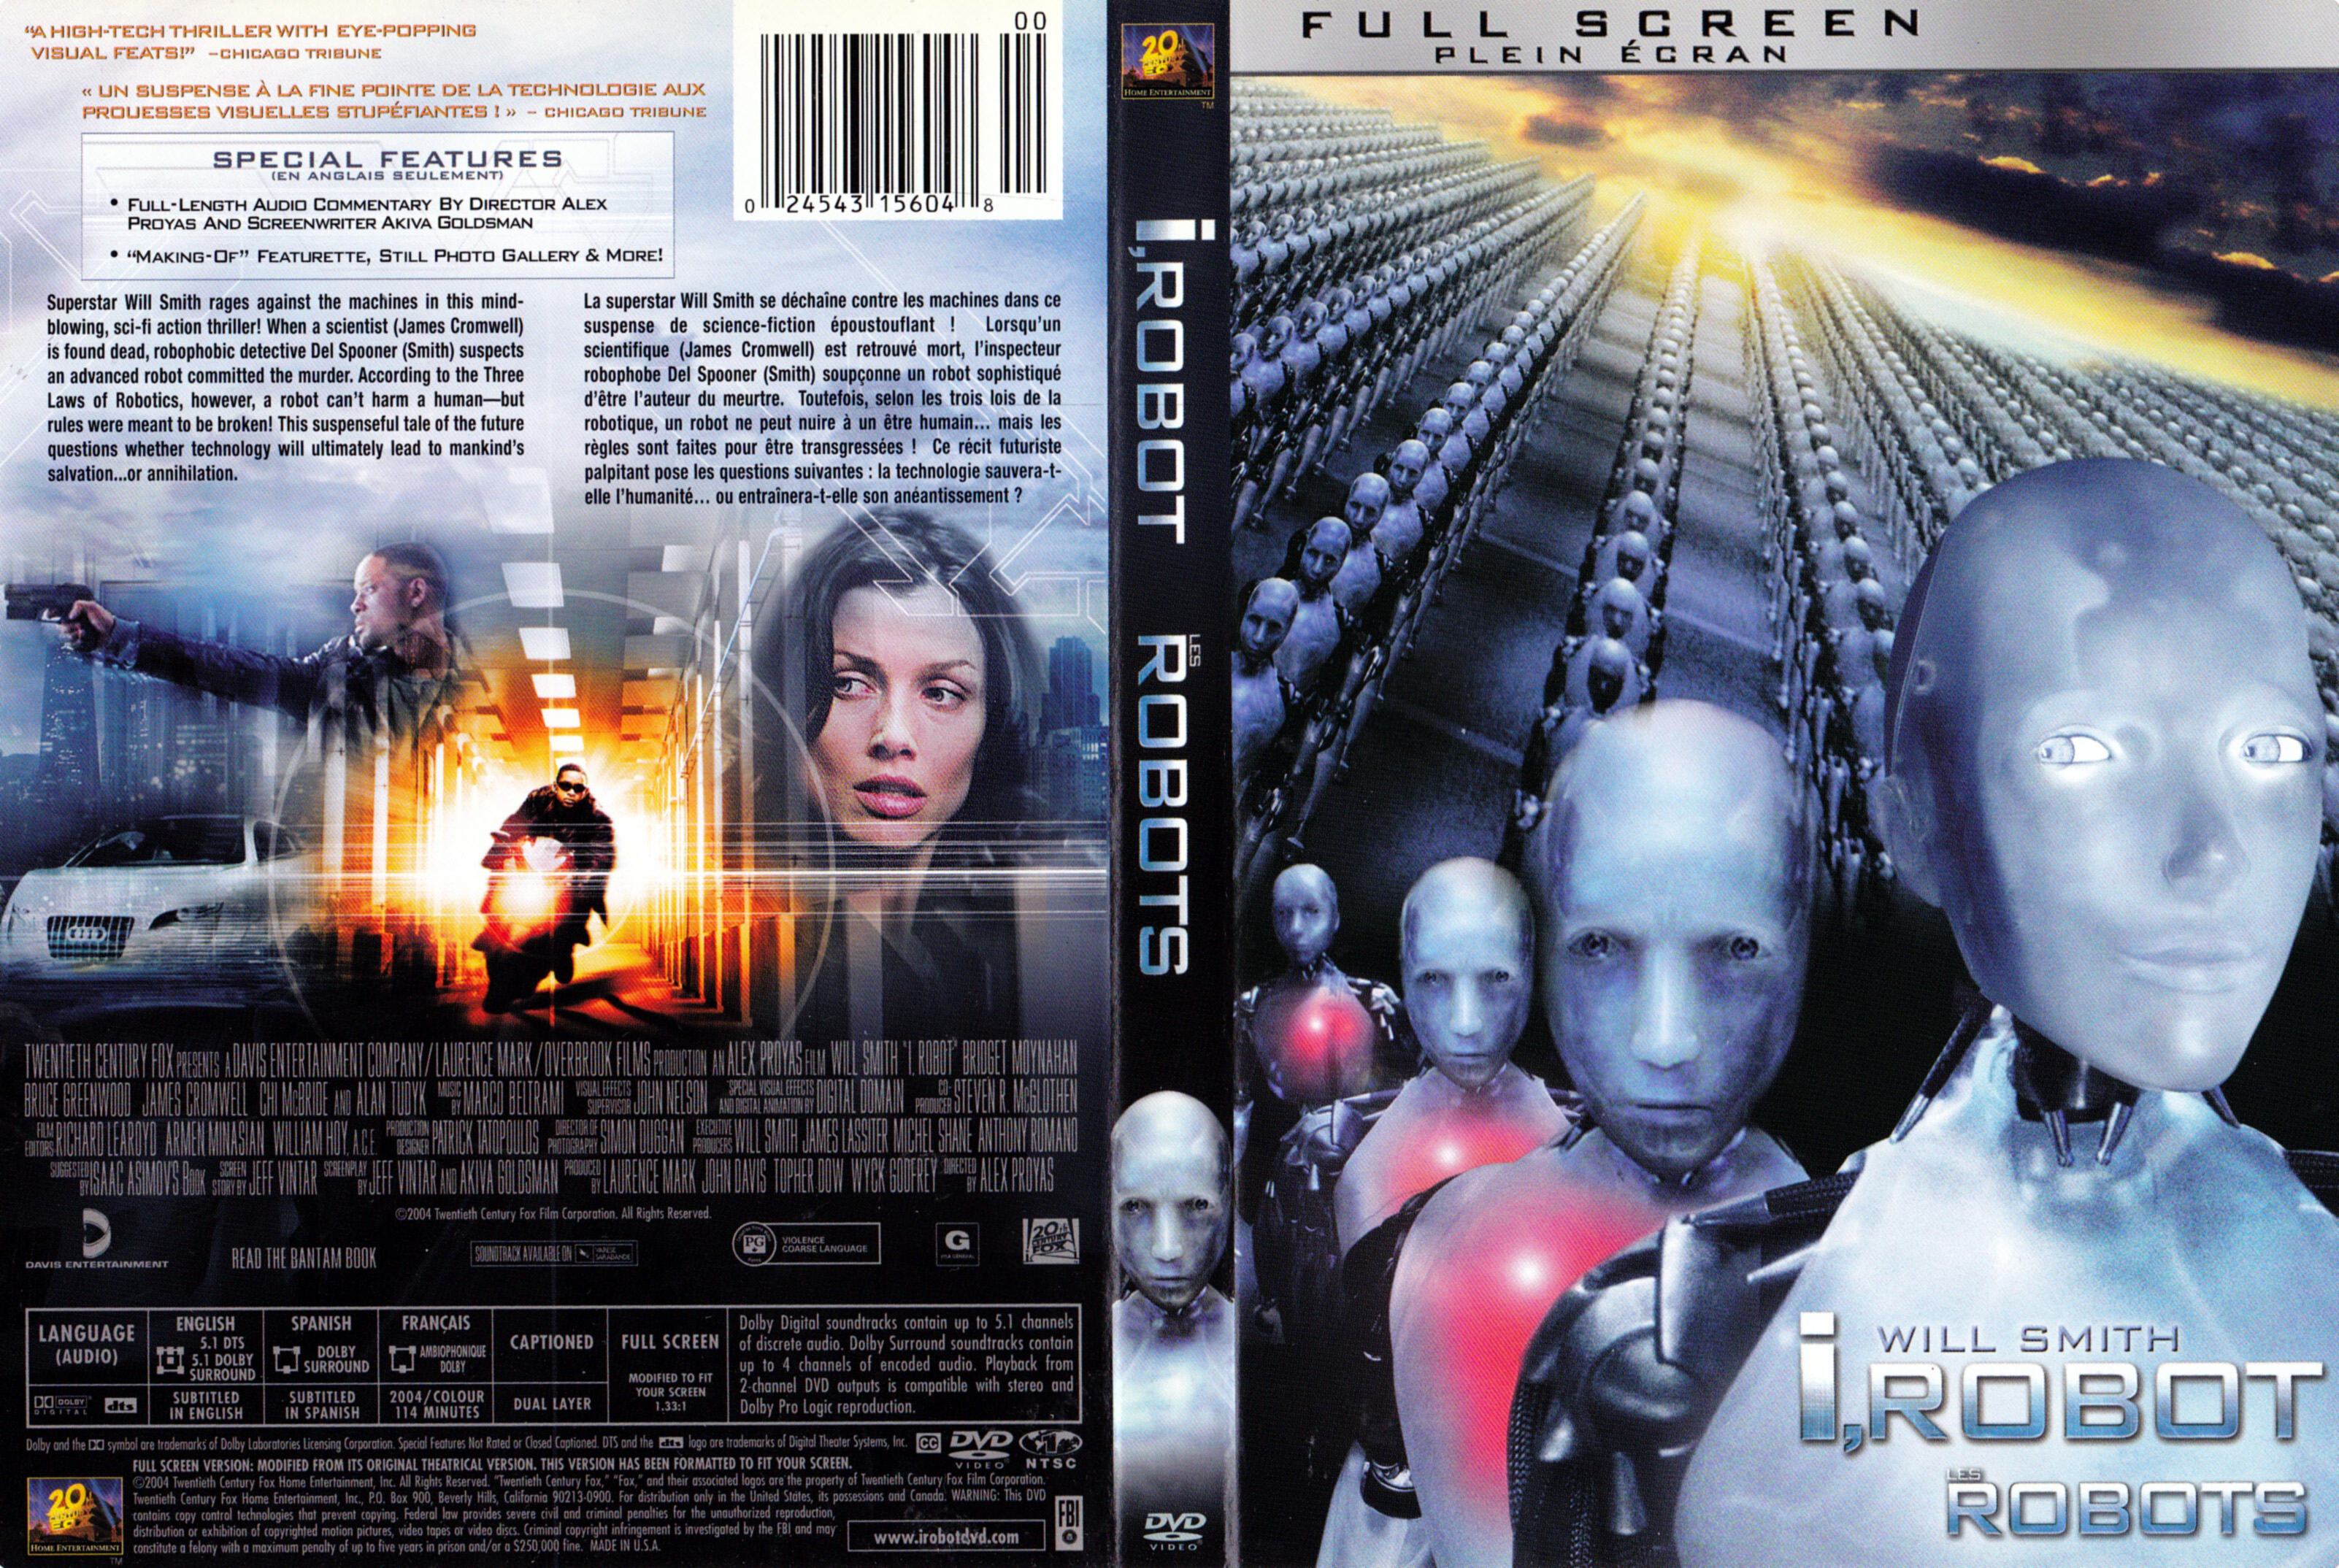 Jaquette DVD I robot - Robots (Canadienne)